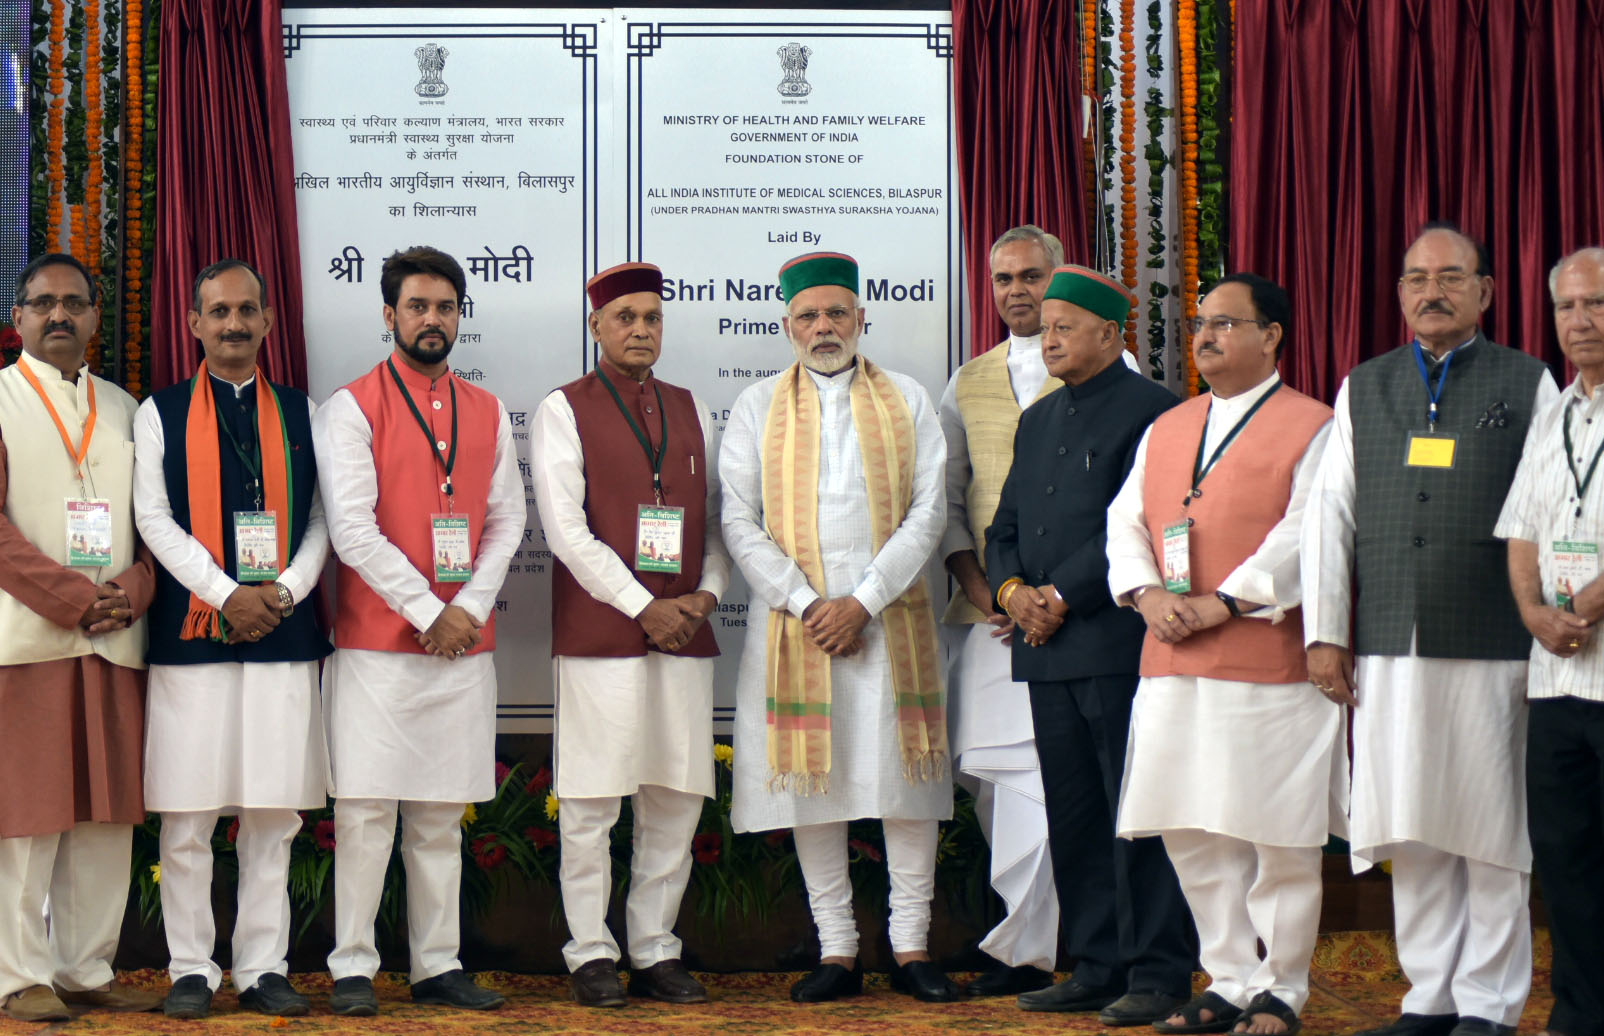 اکتوبر 2017 میں ہماچل پردیش کے بلاس پور میں ایمس کا سنگ بنیاد رکھنے کی تقریب میں وزیر اعظم نریندر مودی، اس وقت کے وزیر صحت جے پی نڈا، گورنر اور وزیر اعلیٰ اور دیگر رہنما۔ (فوٹوبہ شکریہ: پی آئی بی)